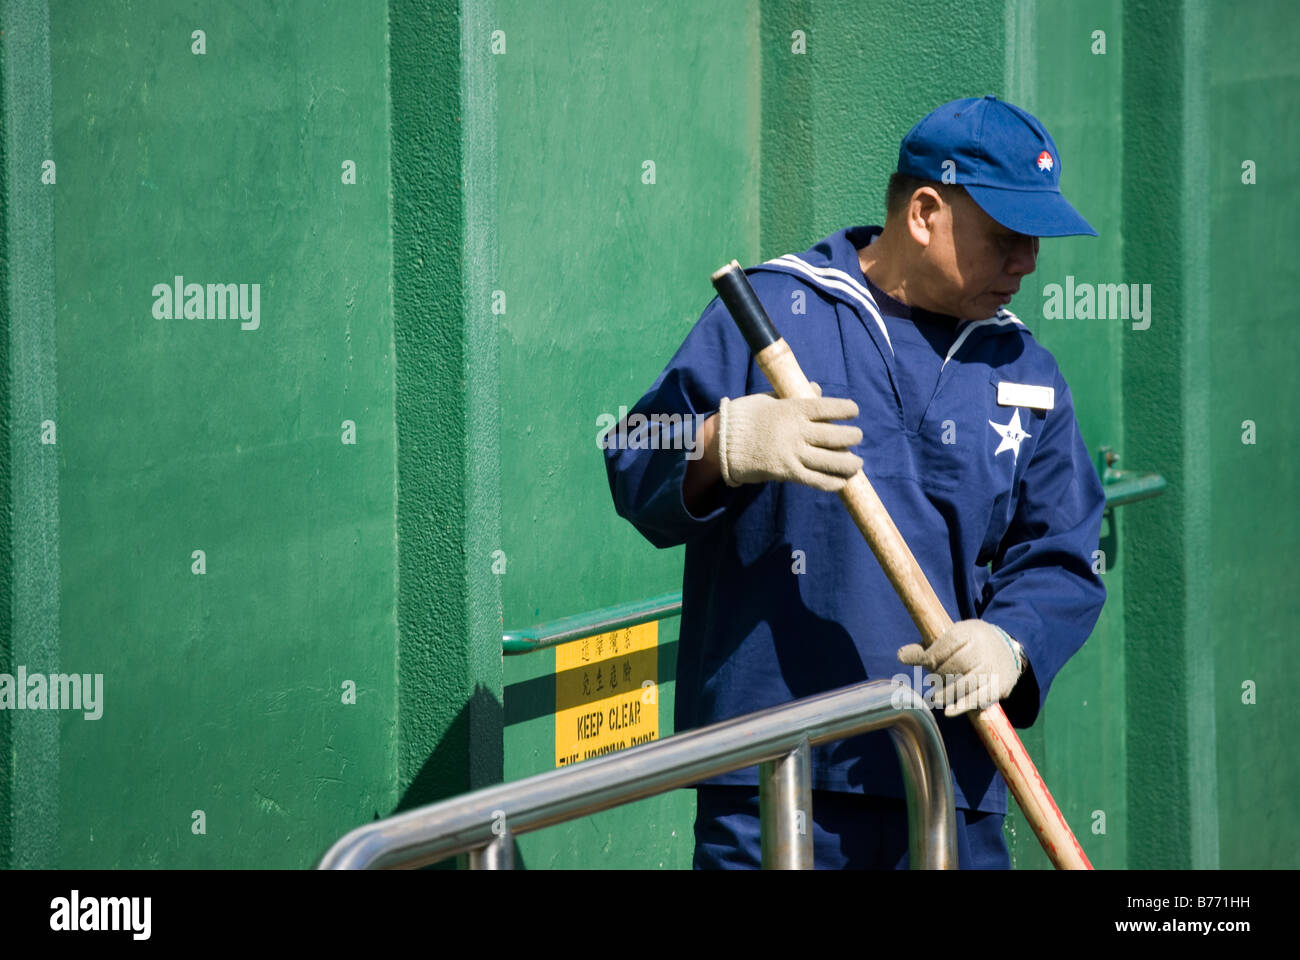 Il Traghetto Star uomo in uniforme contribuendo alla banchina del traghetto, Tsim Sha Tsui, la Penisola di Kowloon, Hong Kong, Repubblica Popolare di Cina Foto Stock